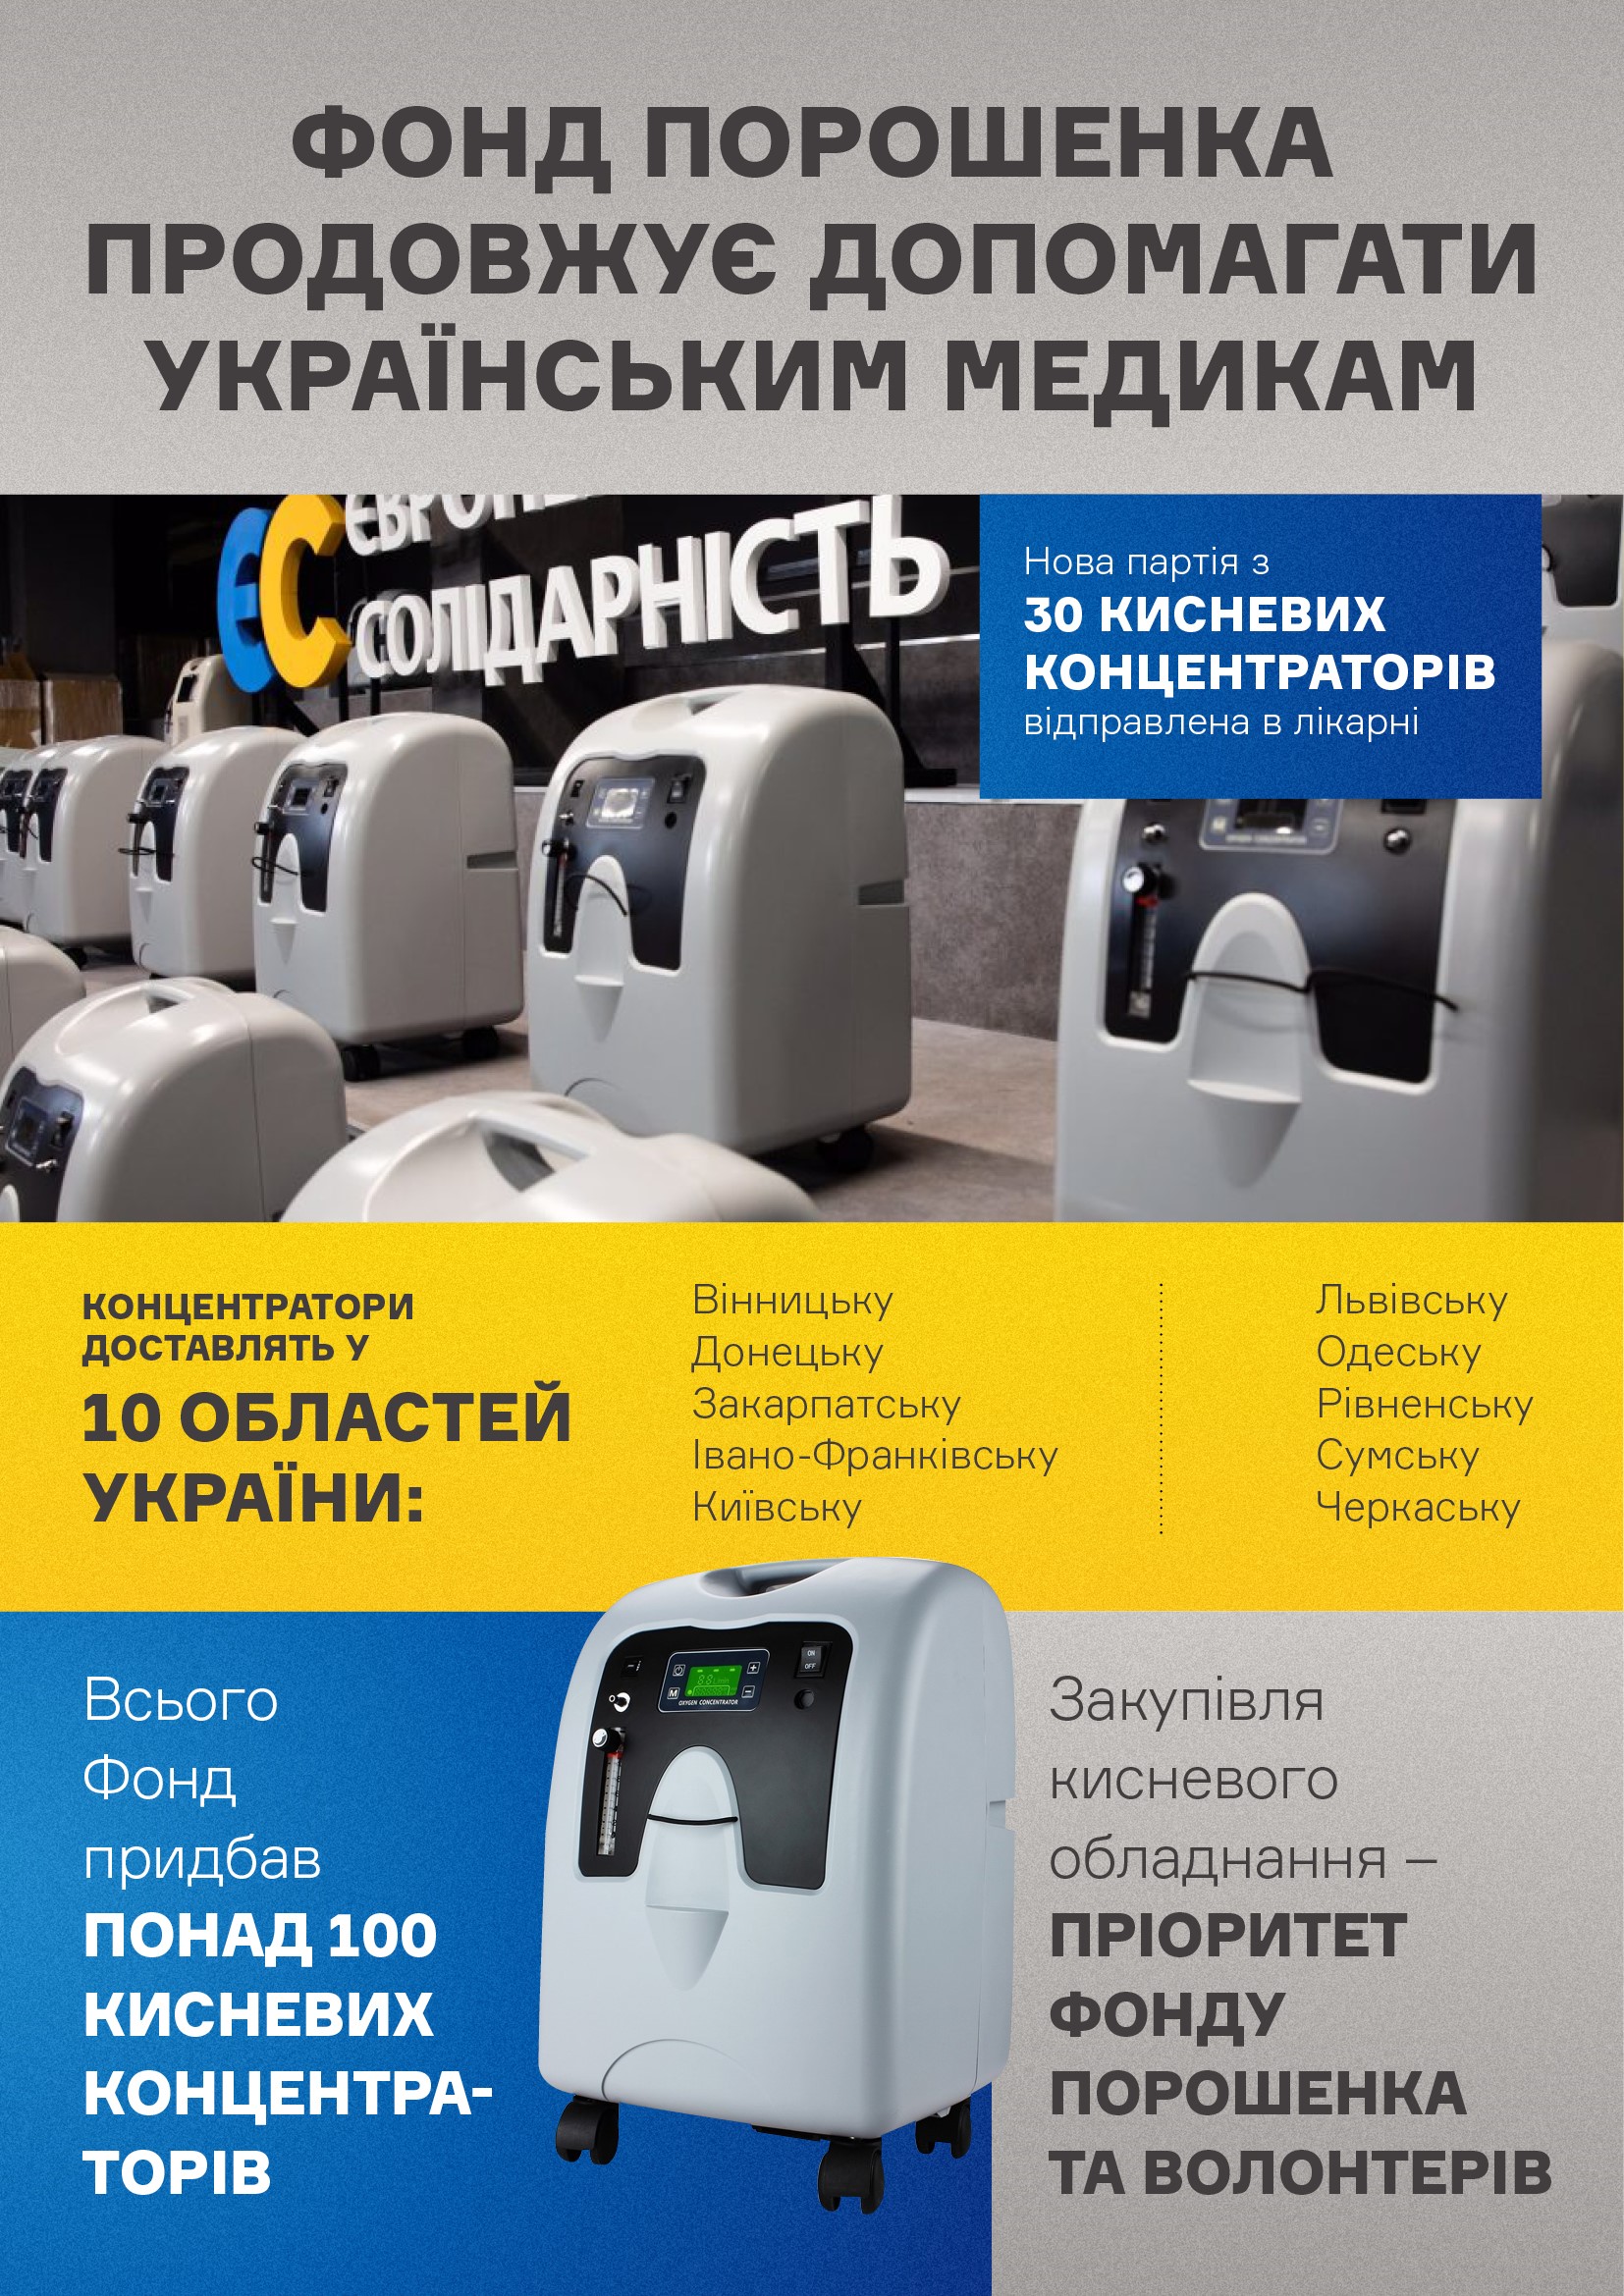 Рік пандемії: понад 200 українських лікарень отримали допомогу від Фонду Порошенка - фото 2